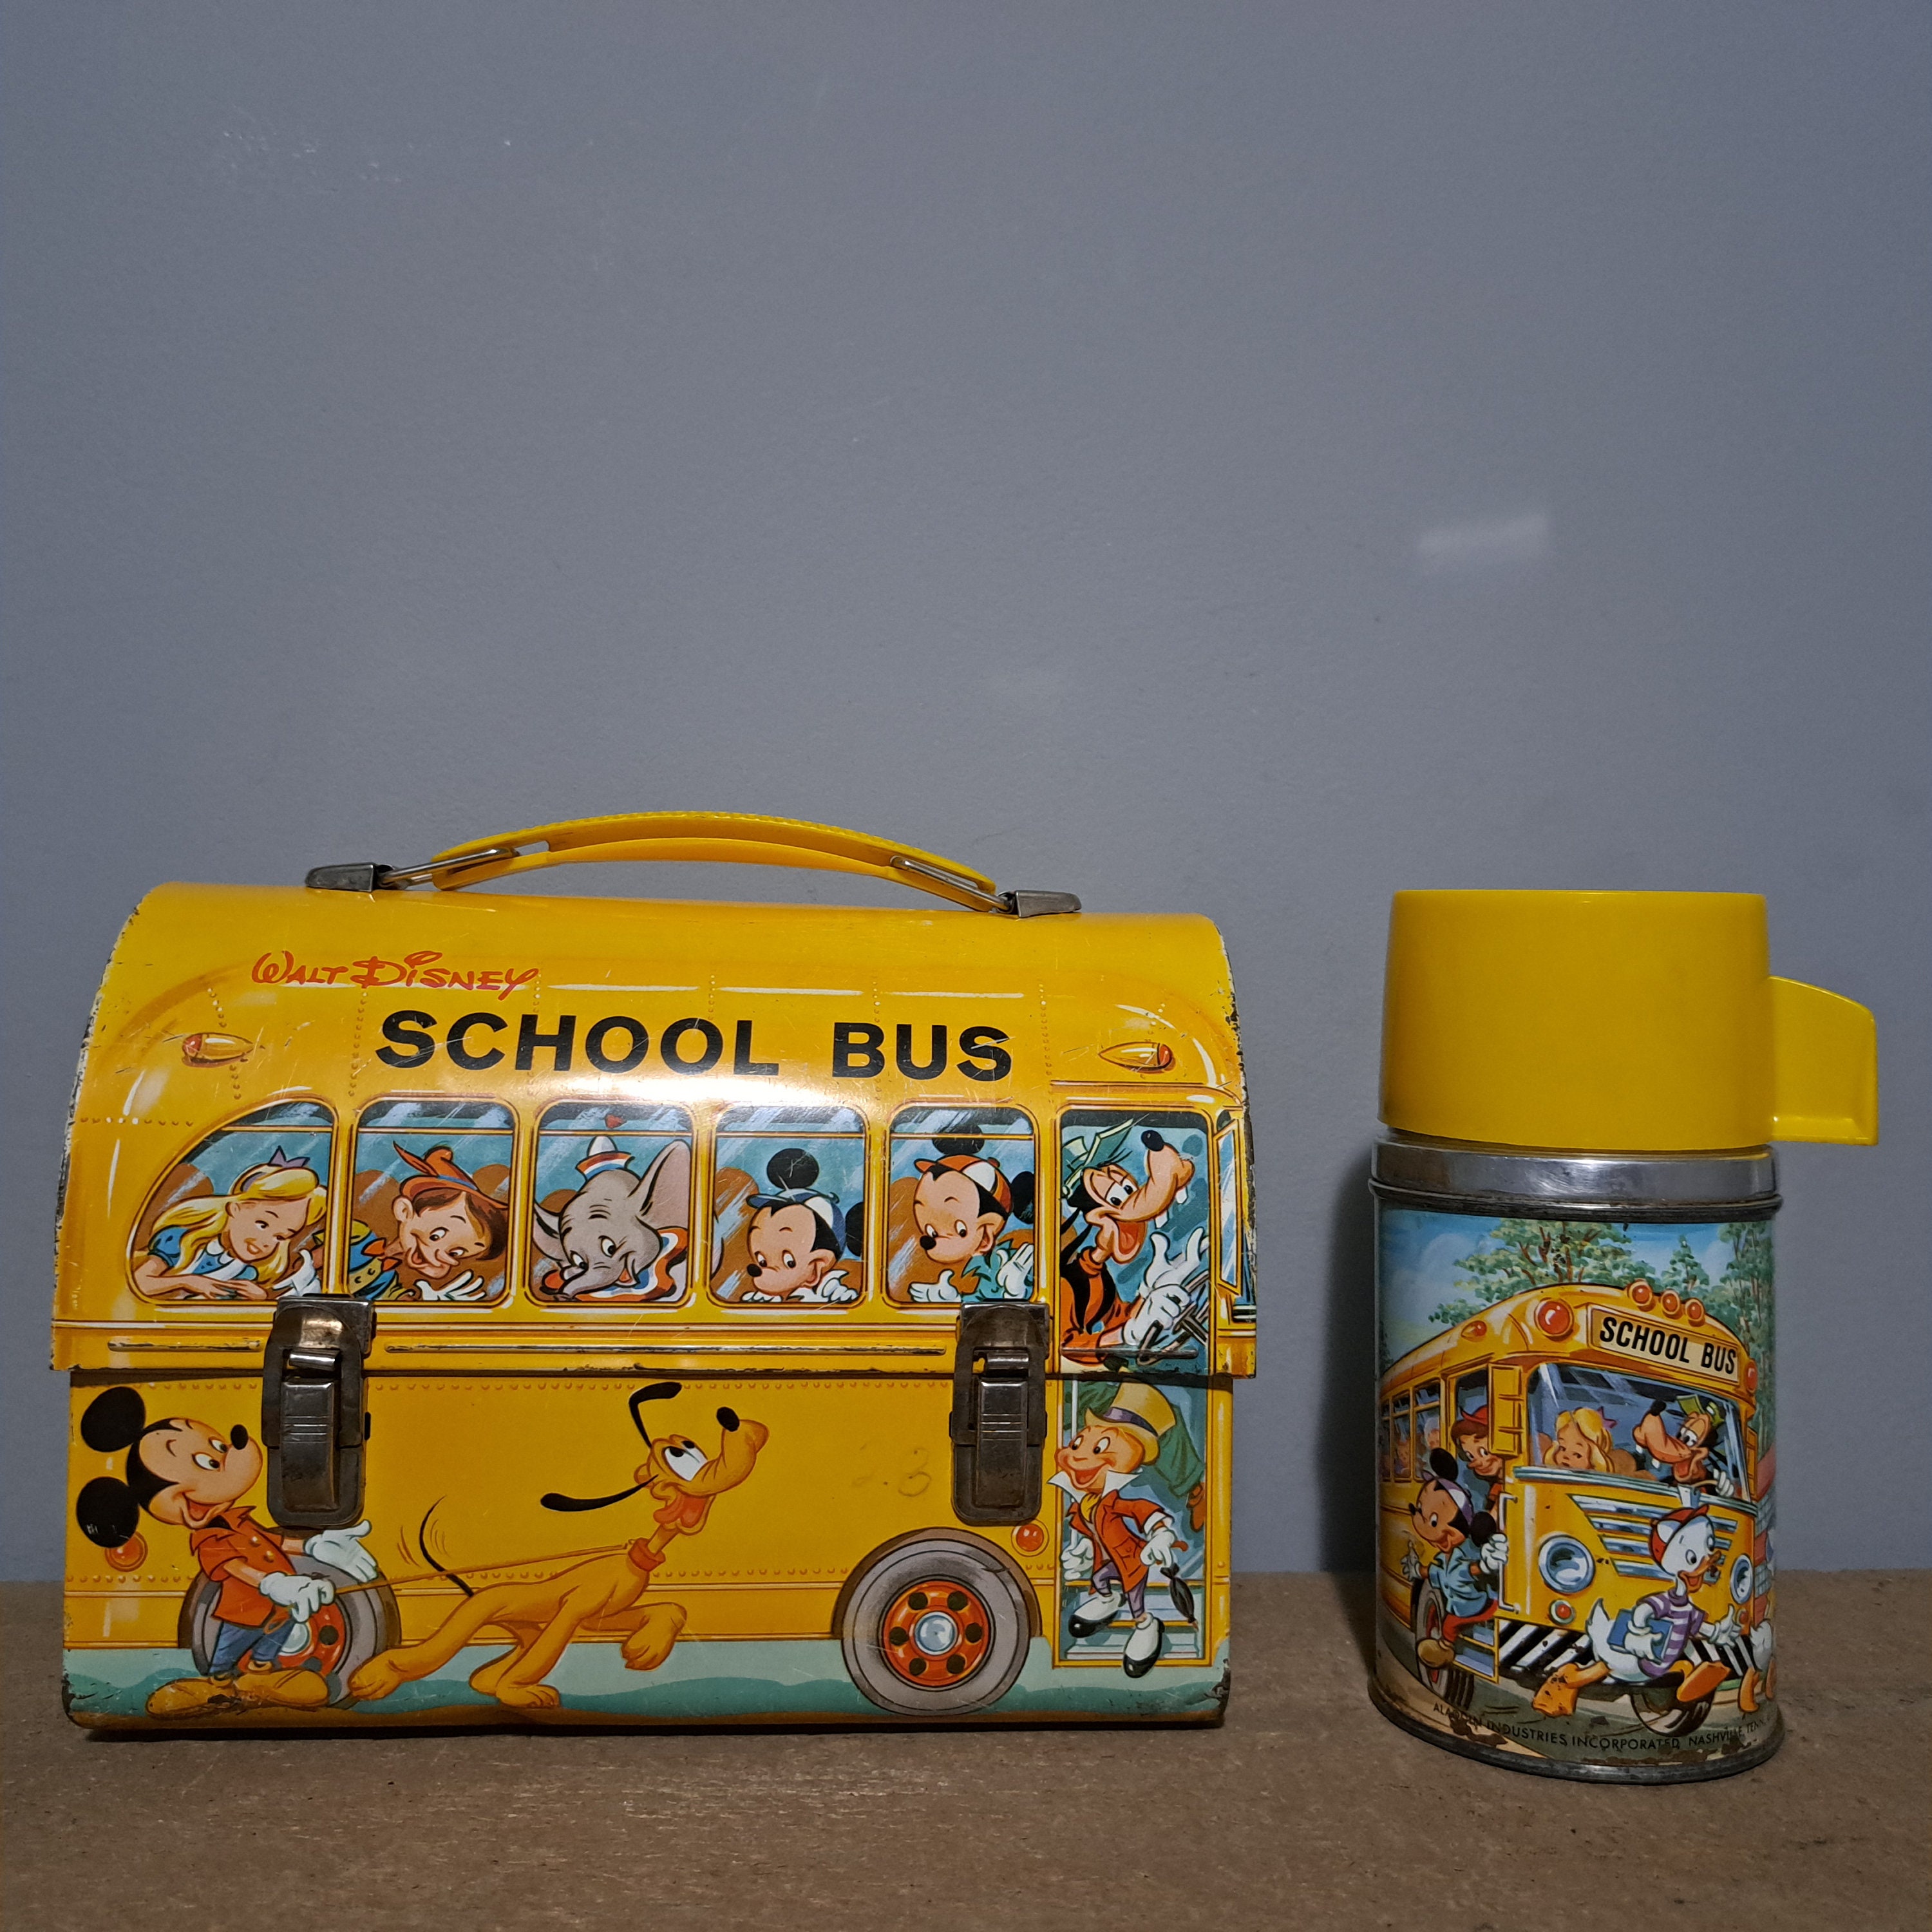 Vintage Walt Disney Metal SCHOOL BUS Lunch Box - No Thermos 1960s